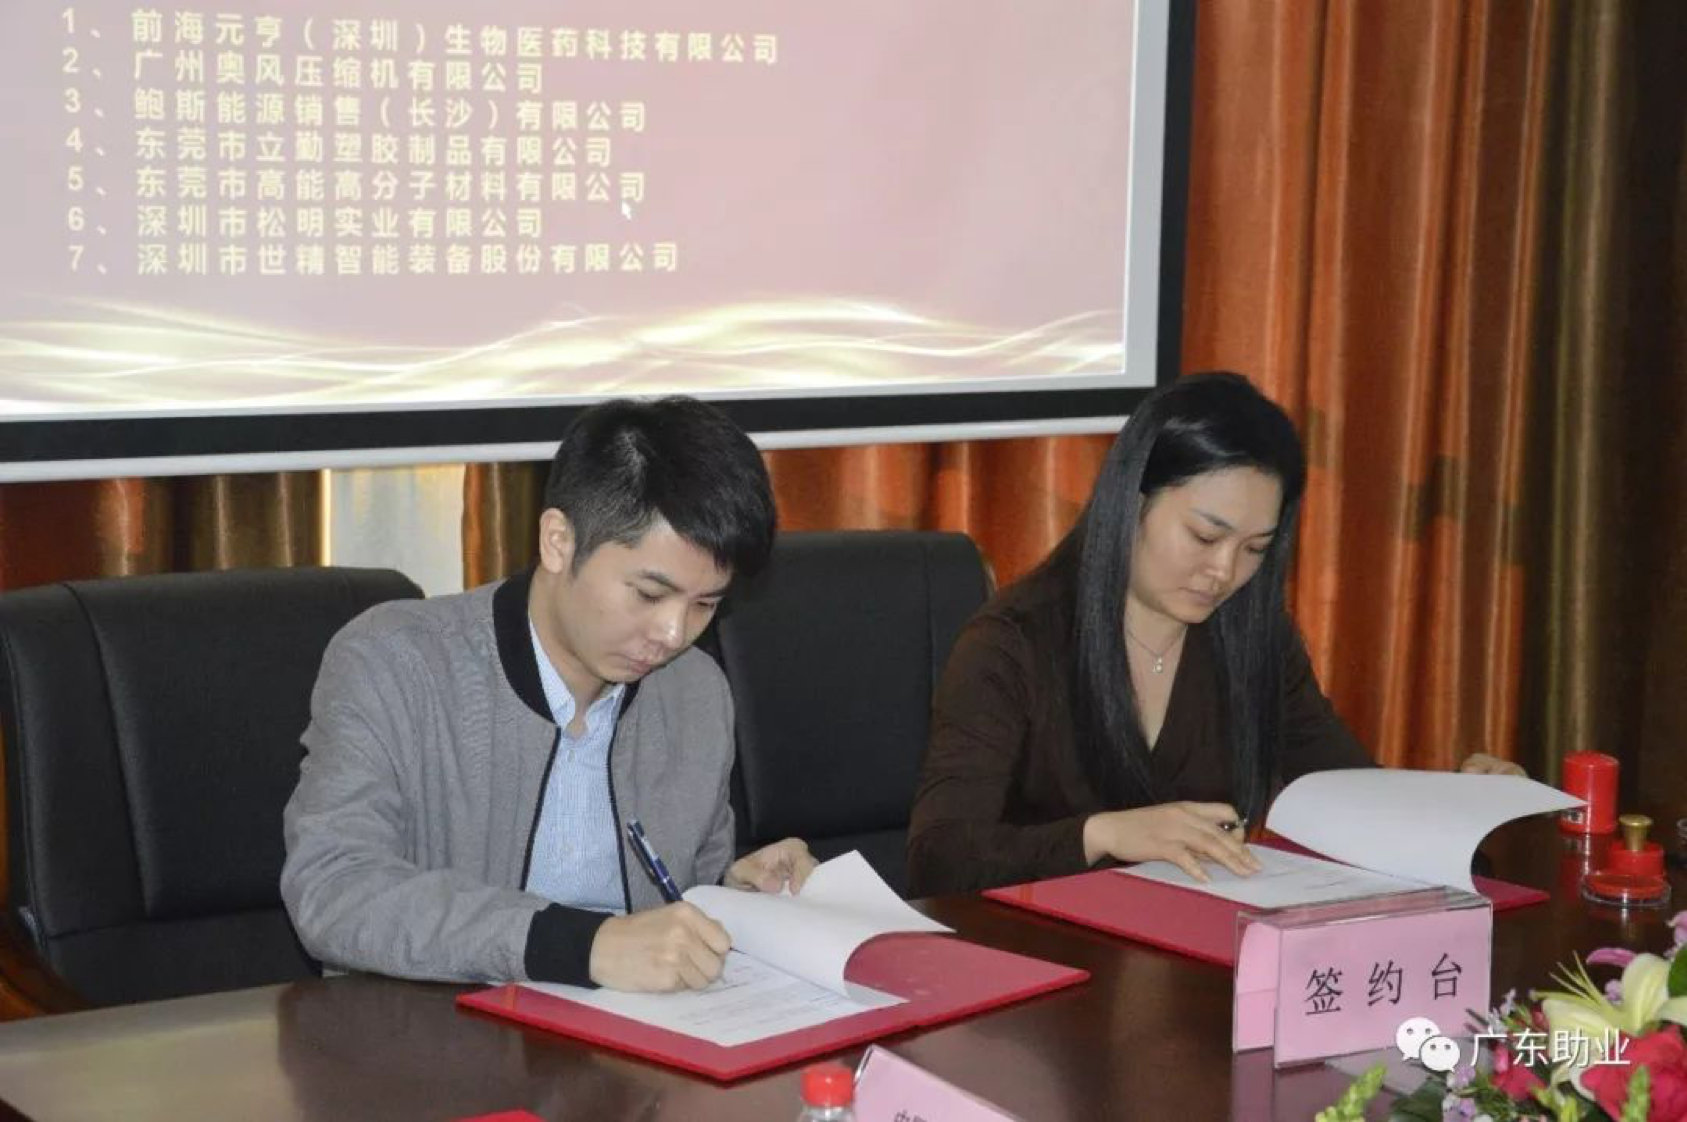 廣州能源研究所戰略合作簽約儀式